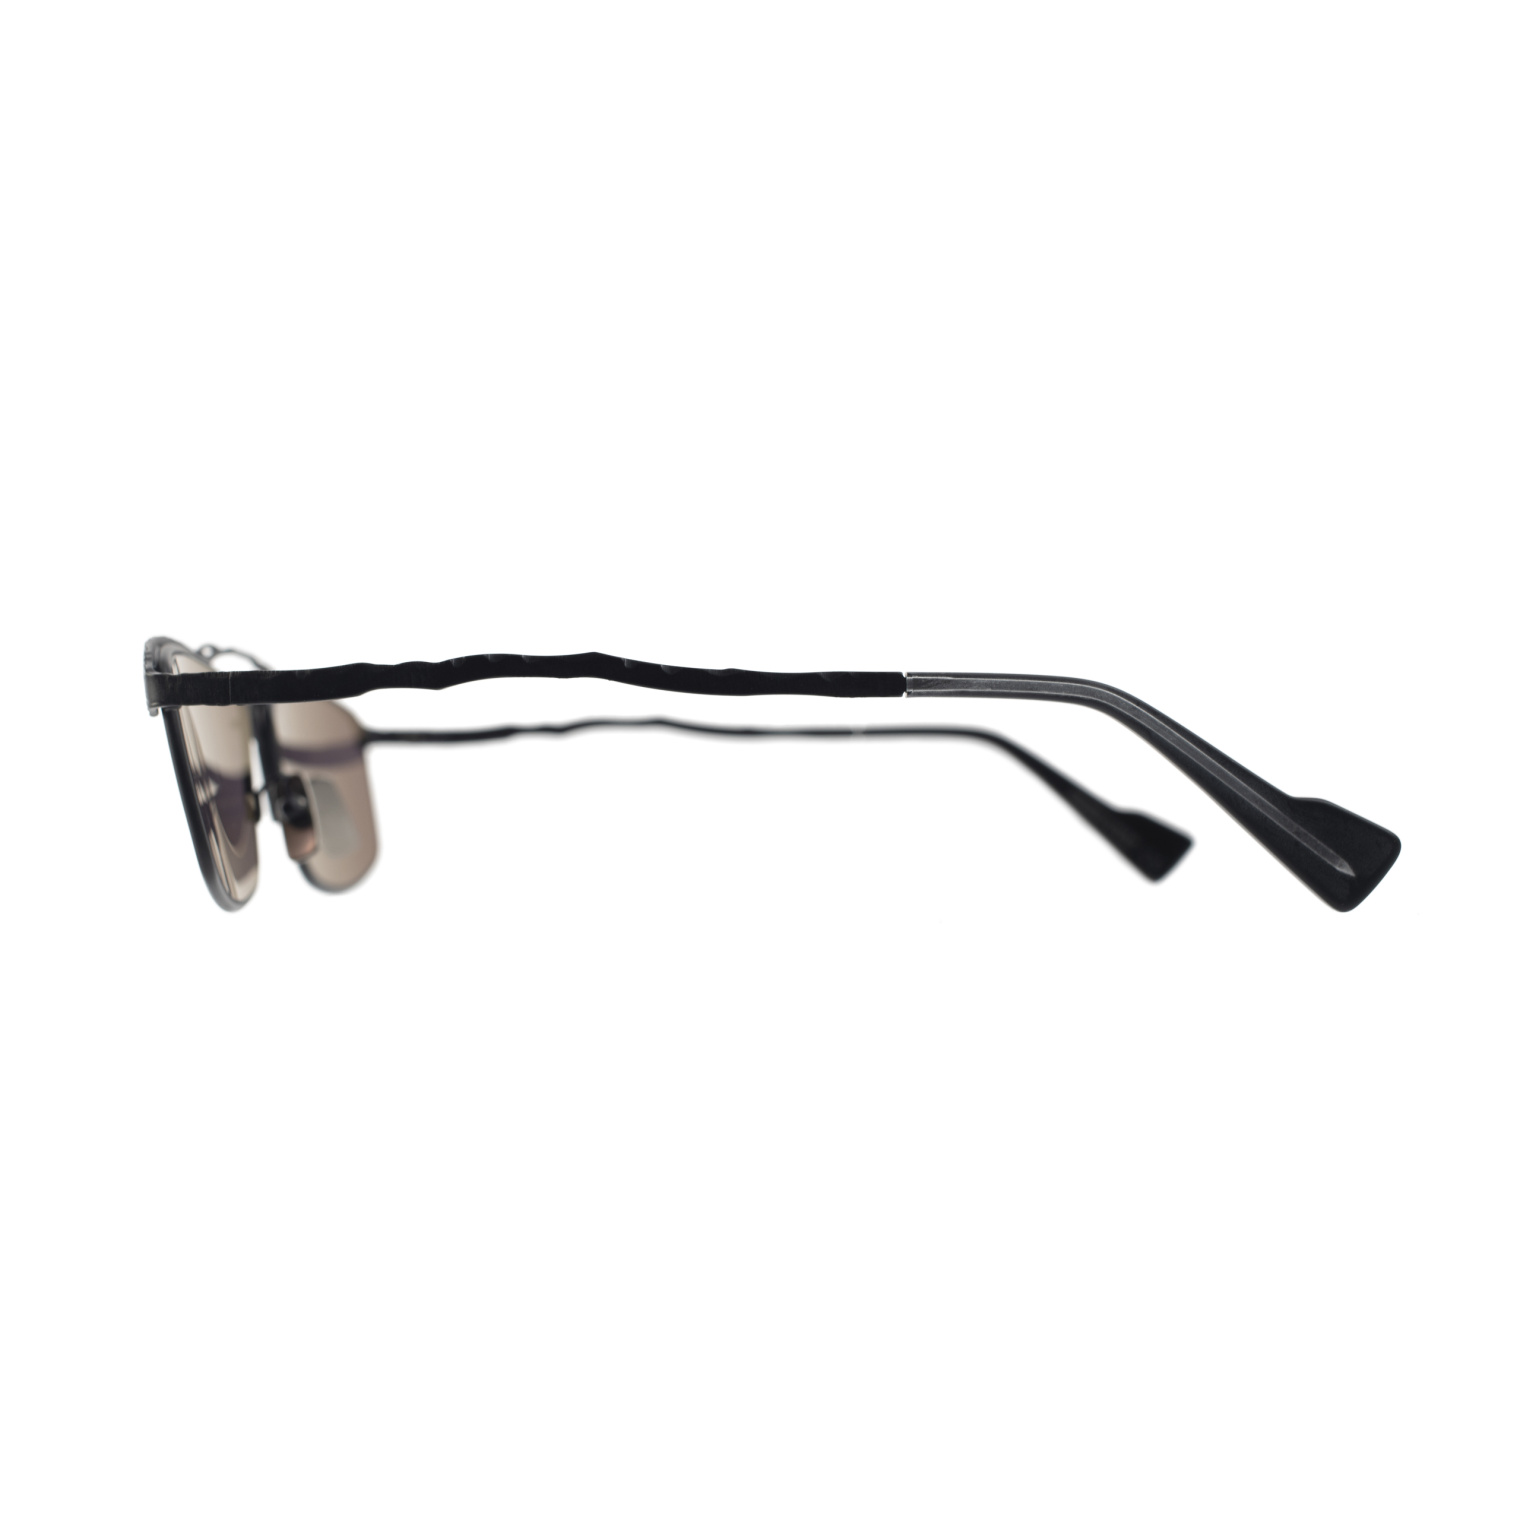 Kuboraum Солнцезащитные очки с черной оправой